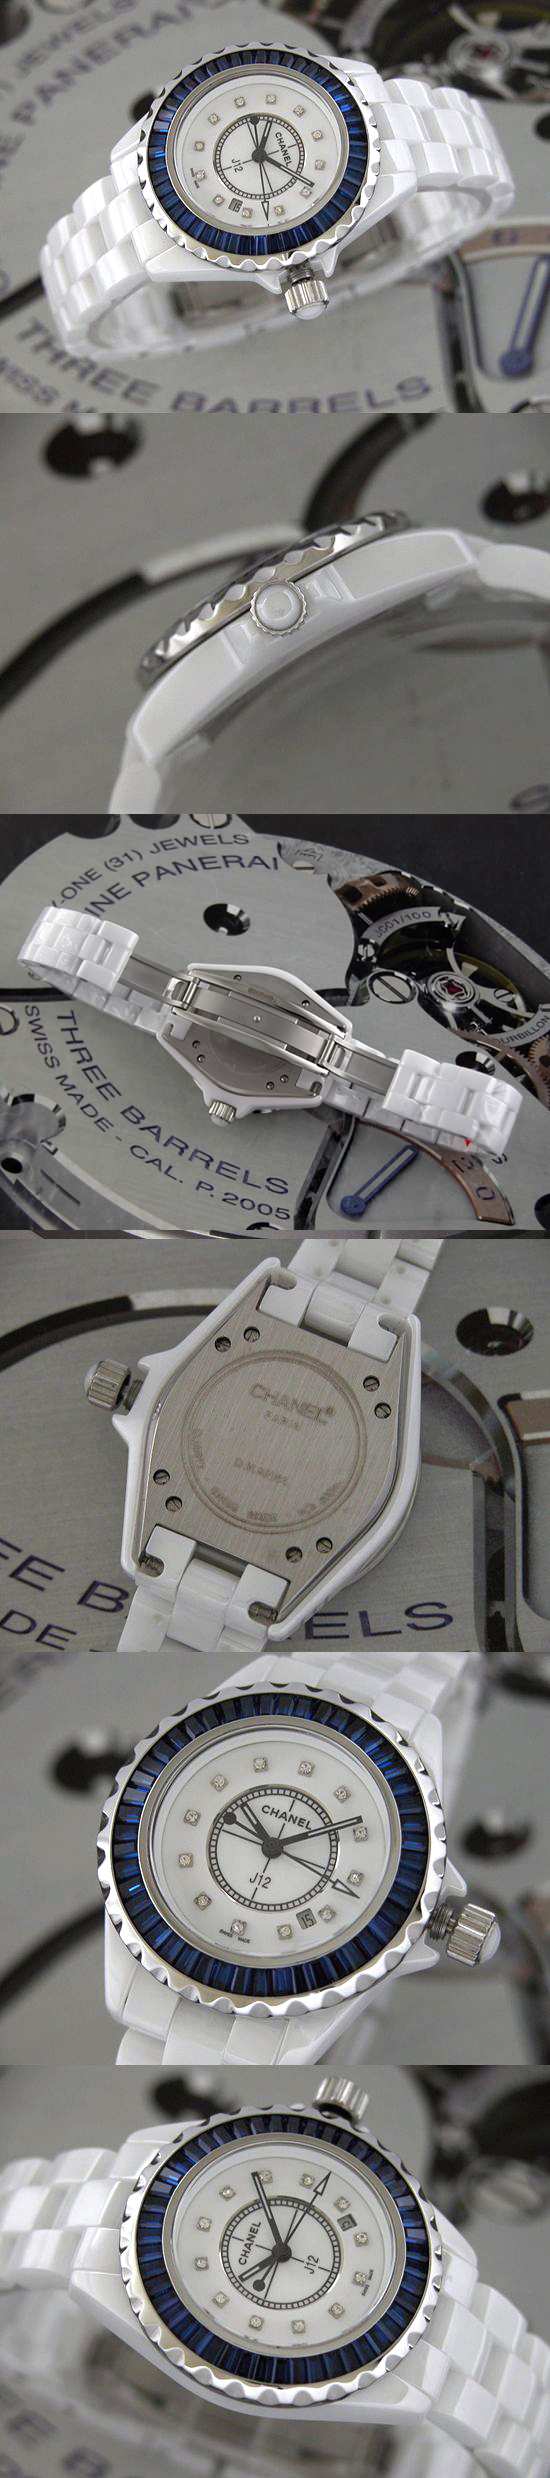 おしゃれなブランド時計がシャネル-CHANEL-H2020-av-J12-女性用を提供します.